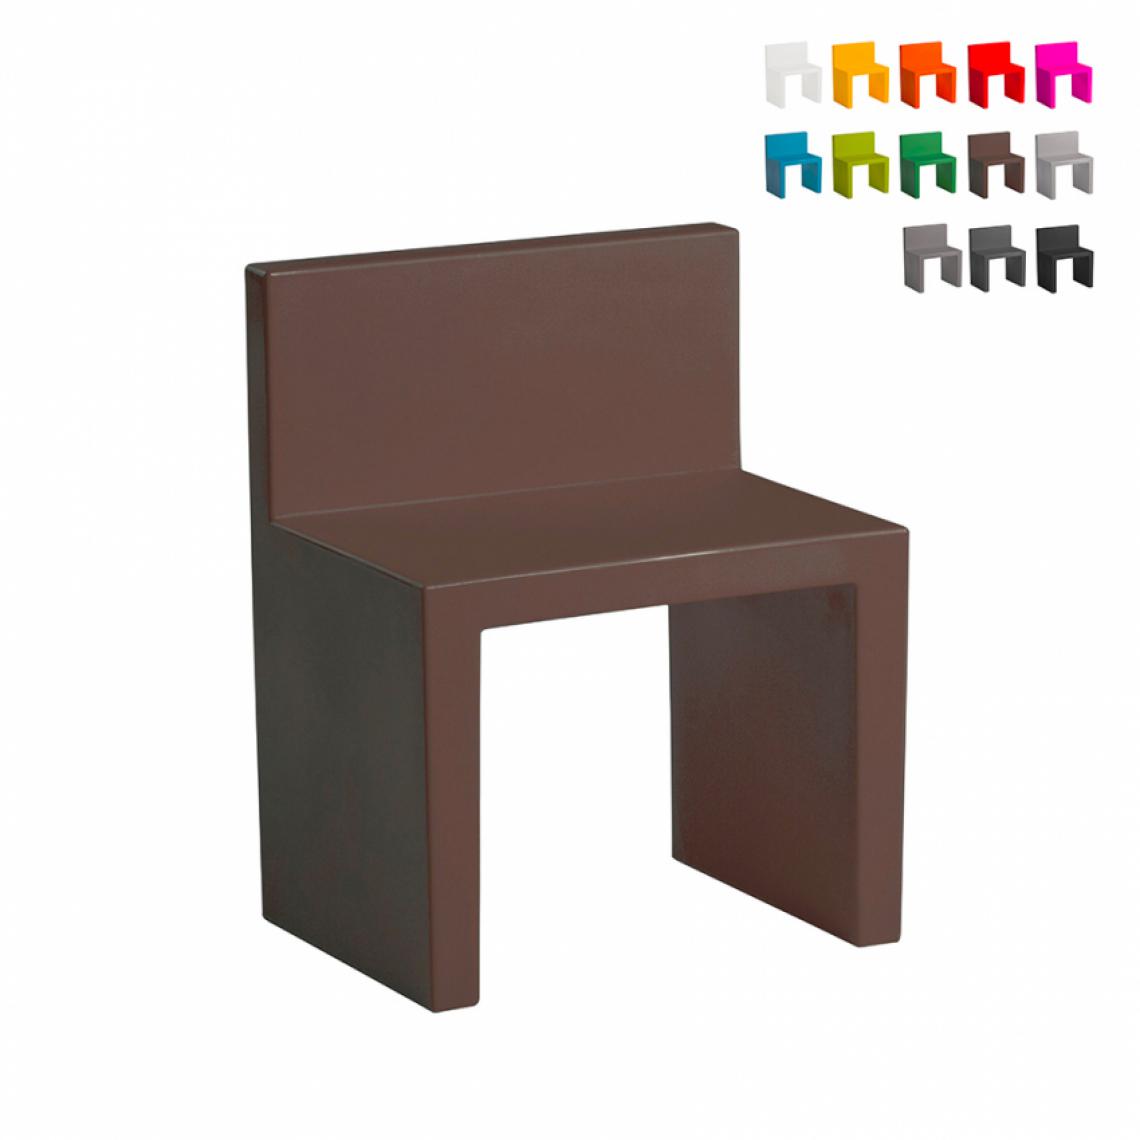 Slide - Chaise au design moderne Slide Angolo Retto pour la maison et le jardin, Couleur: Marron - Chaises